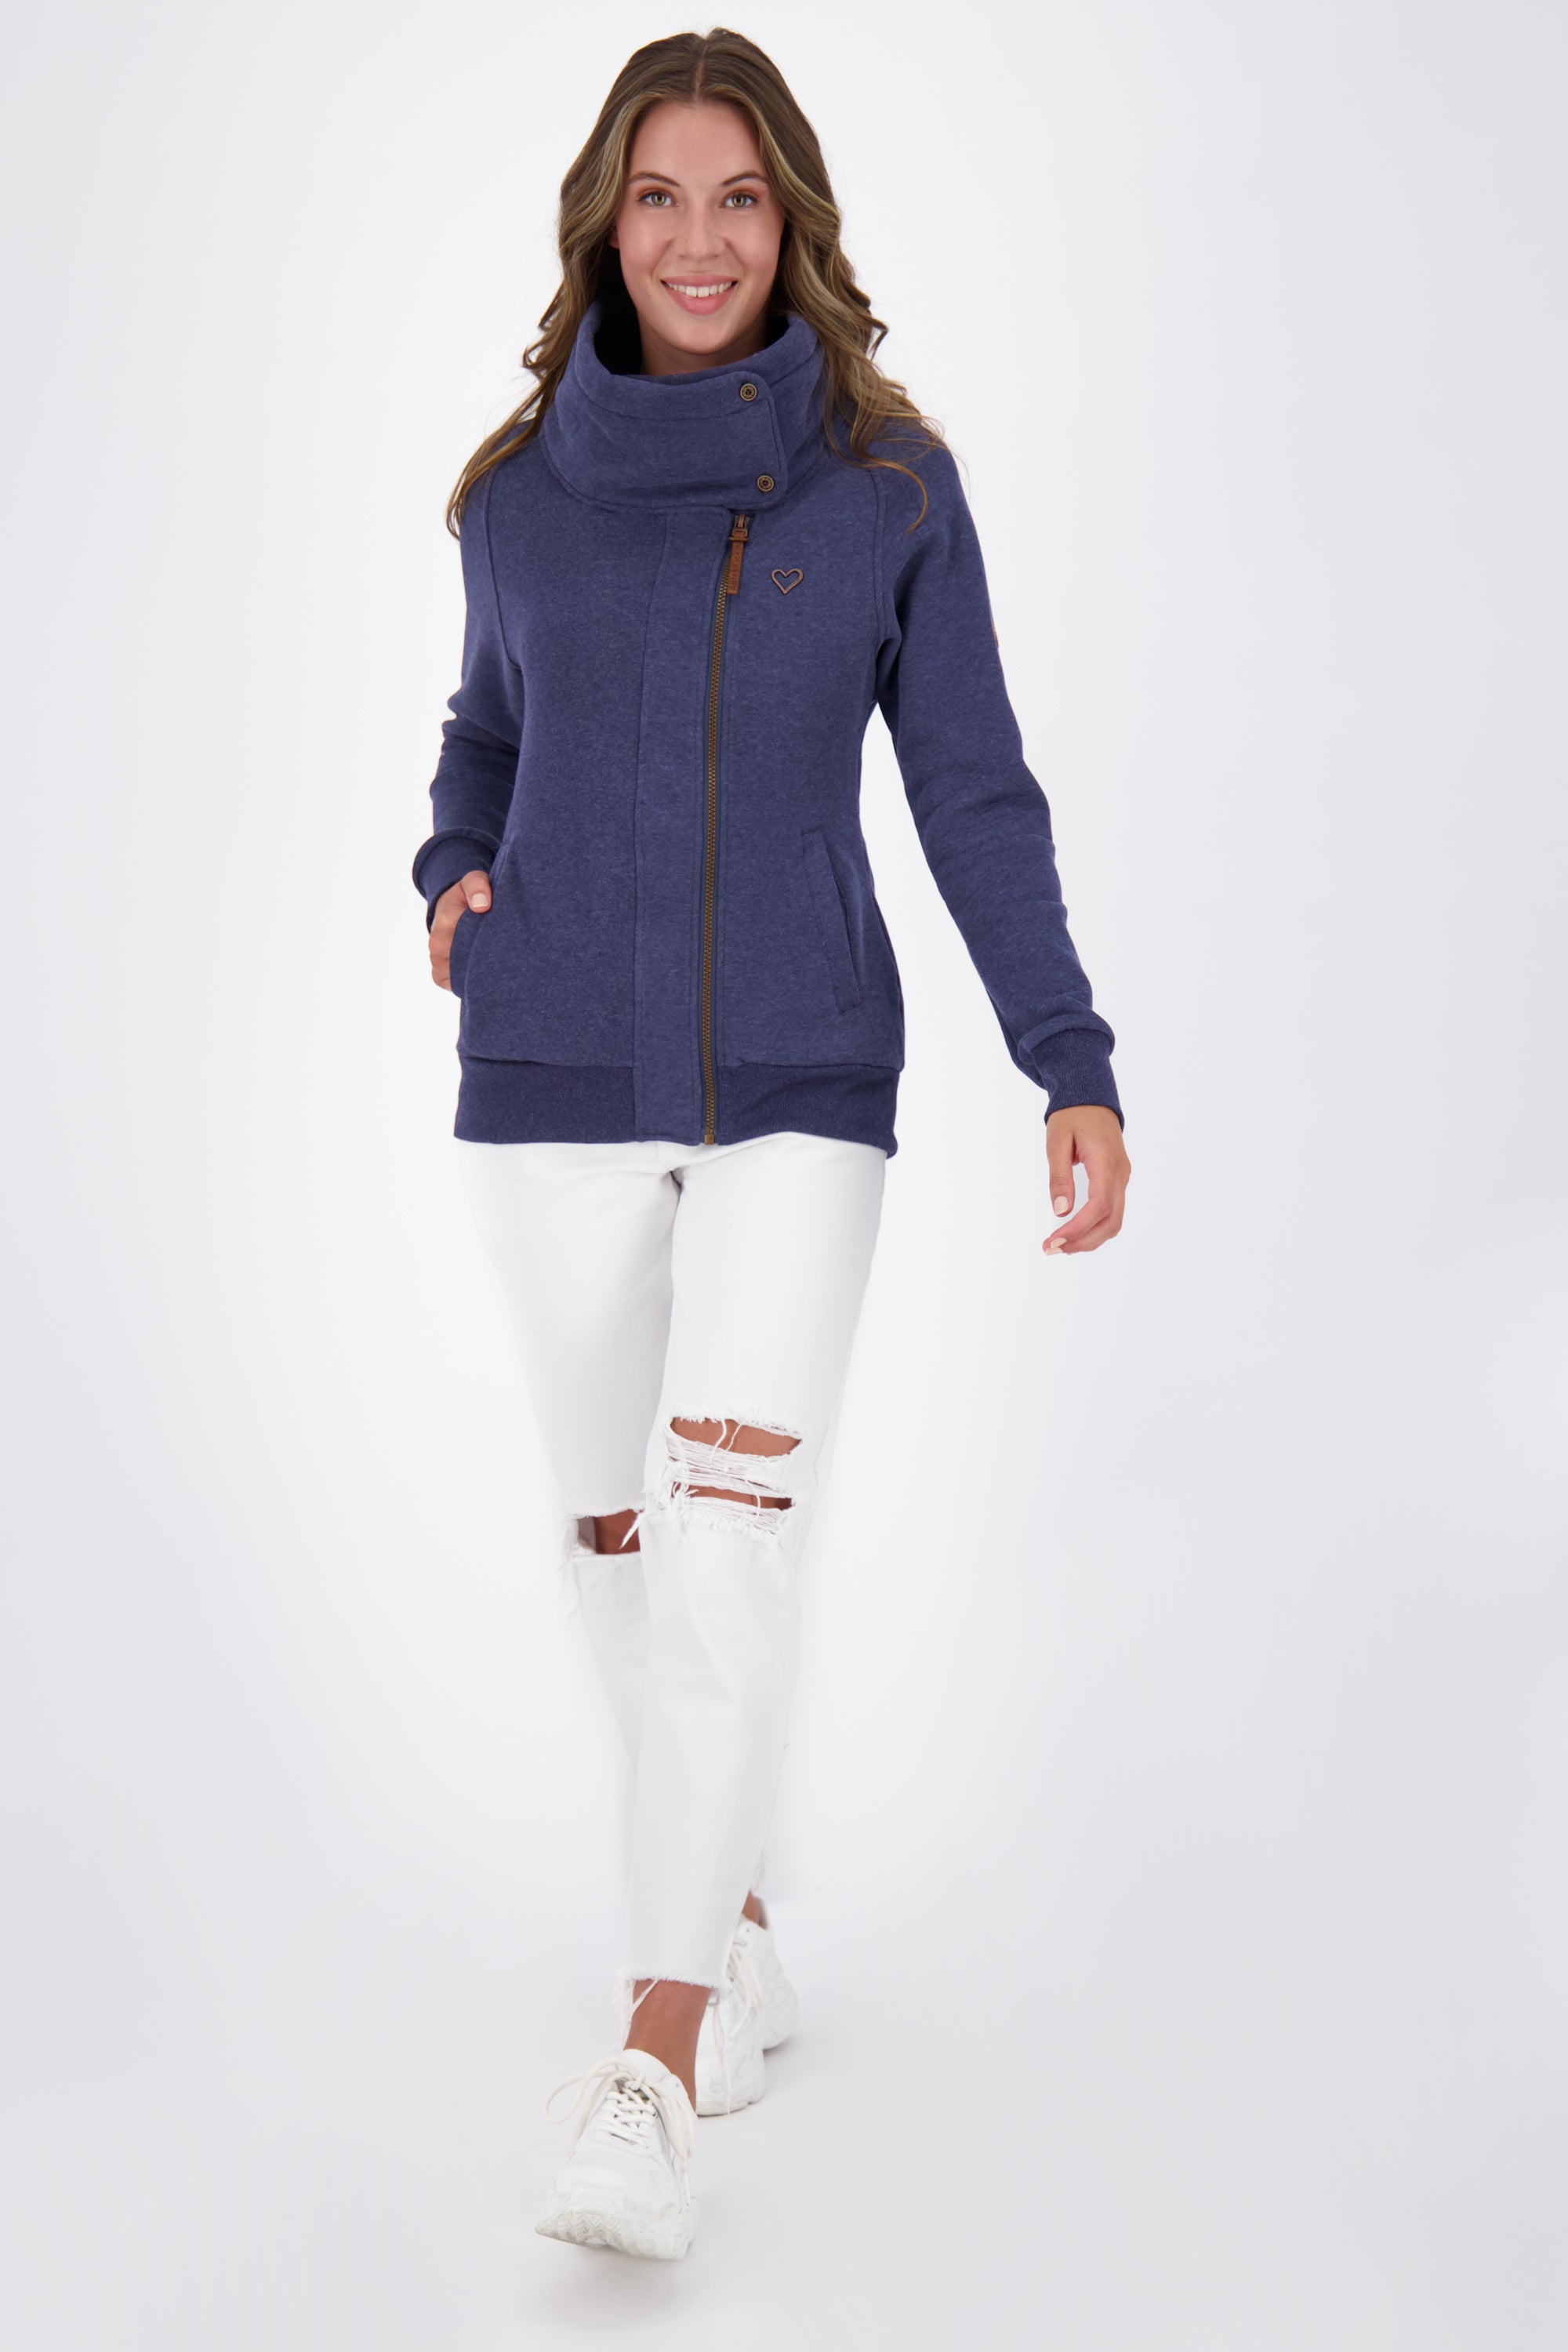 Damen Zip-Jacke MerteAK A - Komfort und Trend in Einem Dunkelblau